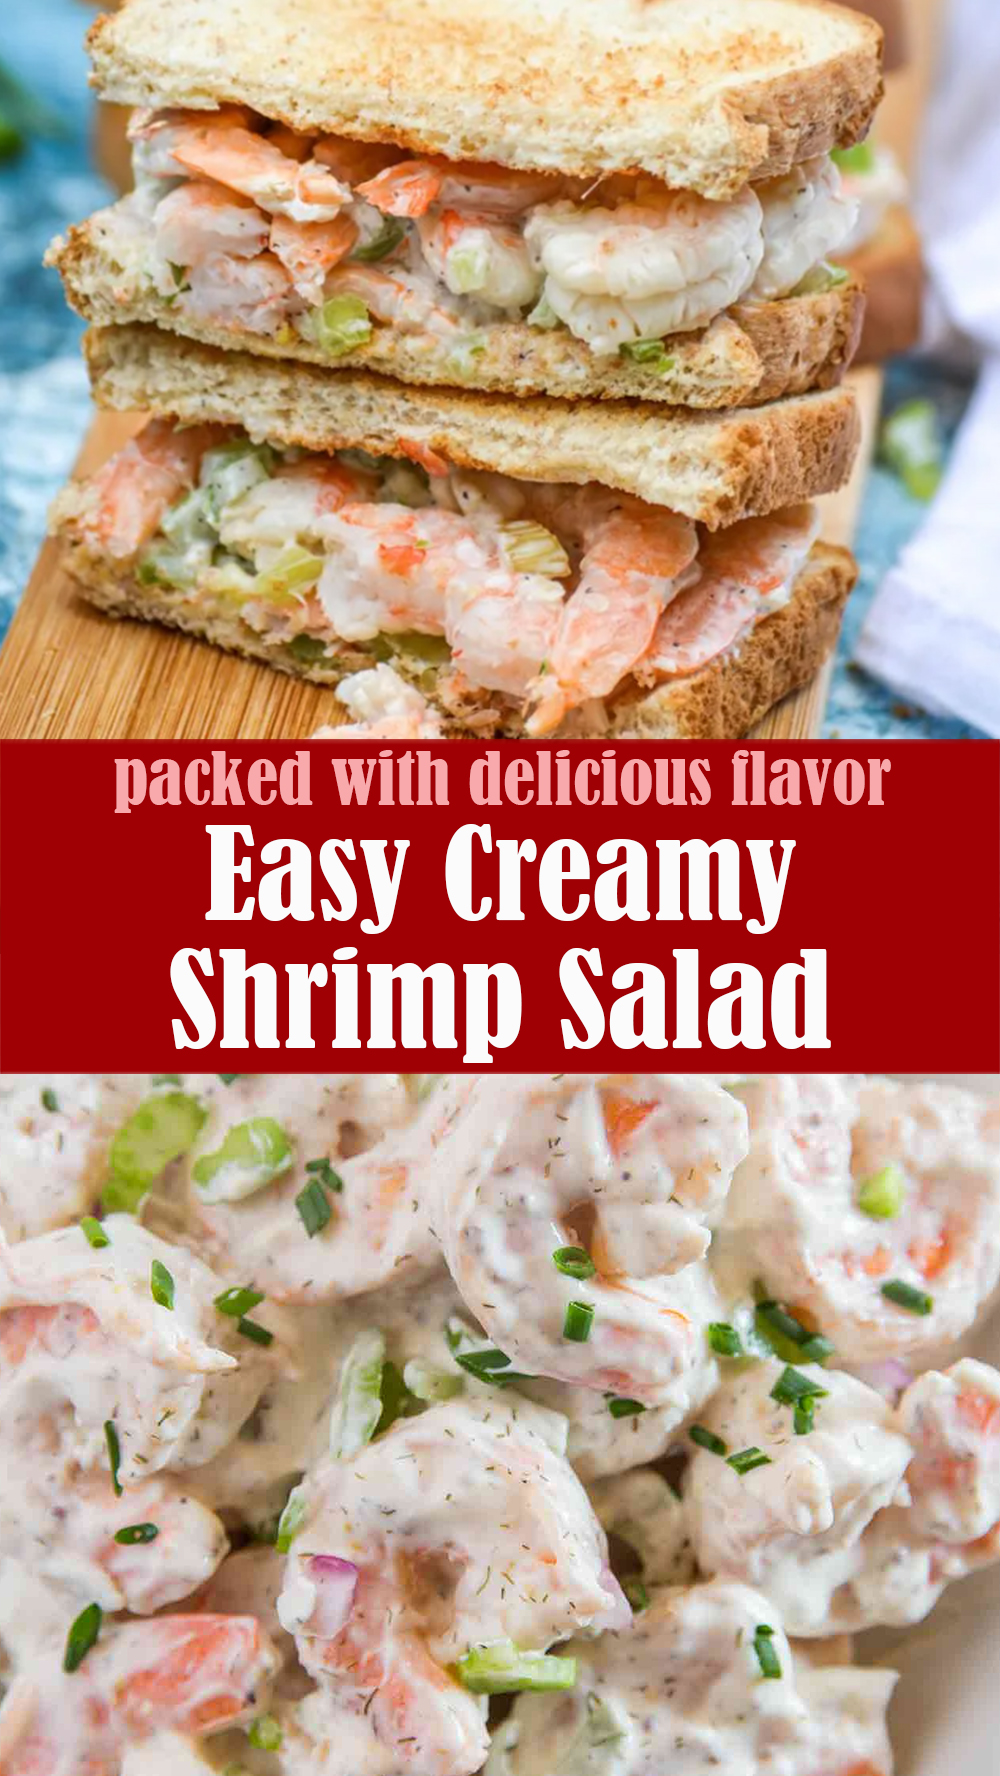 Easy Creamy Shrimp Salad Recipe